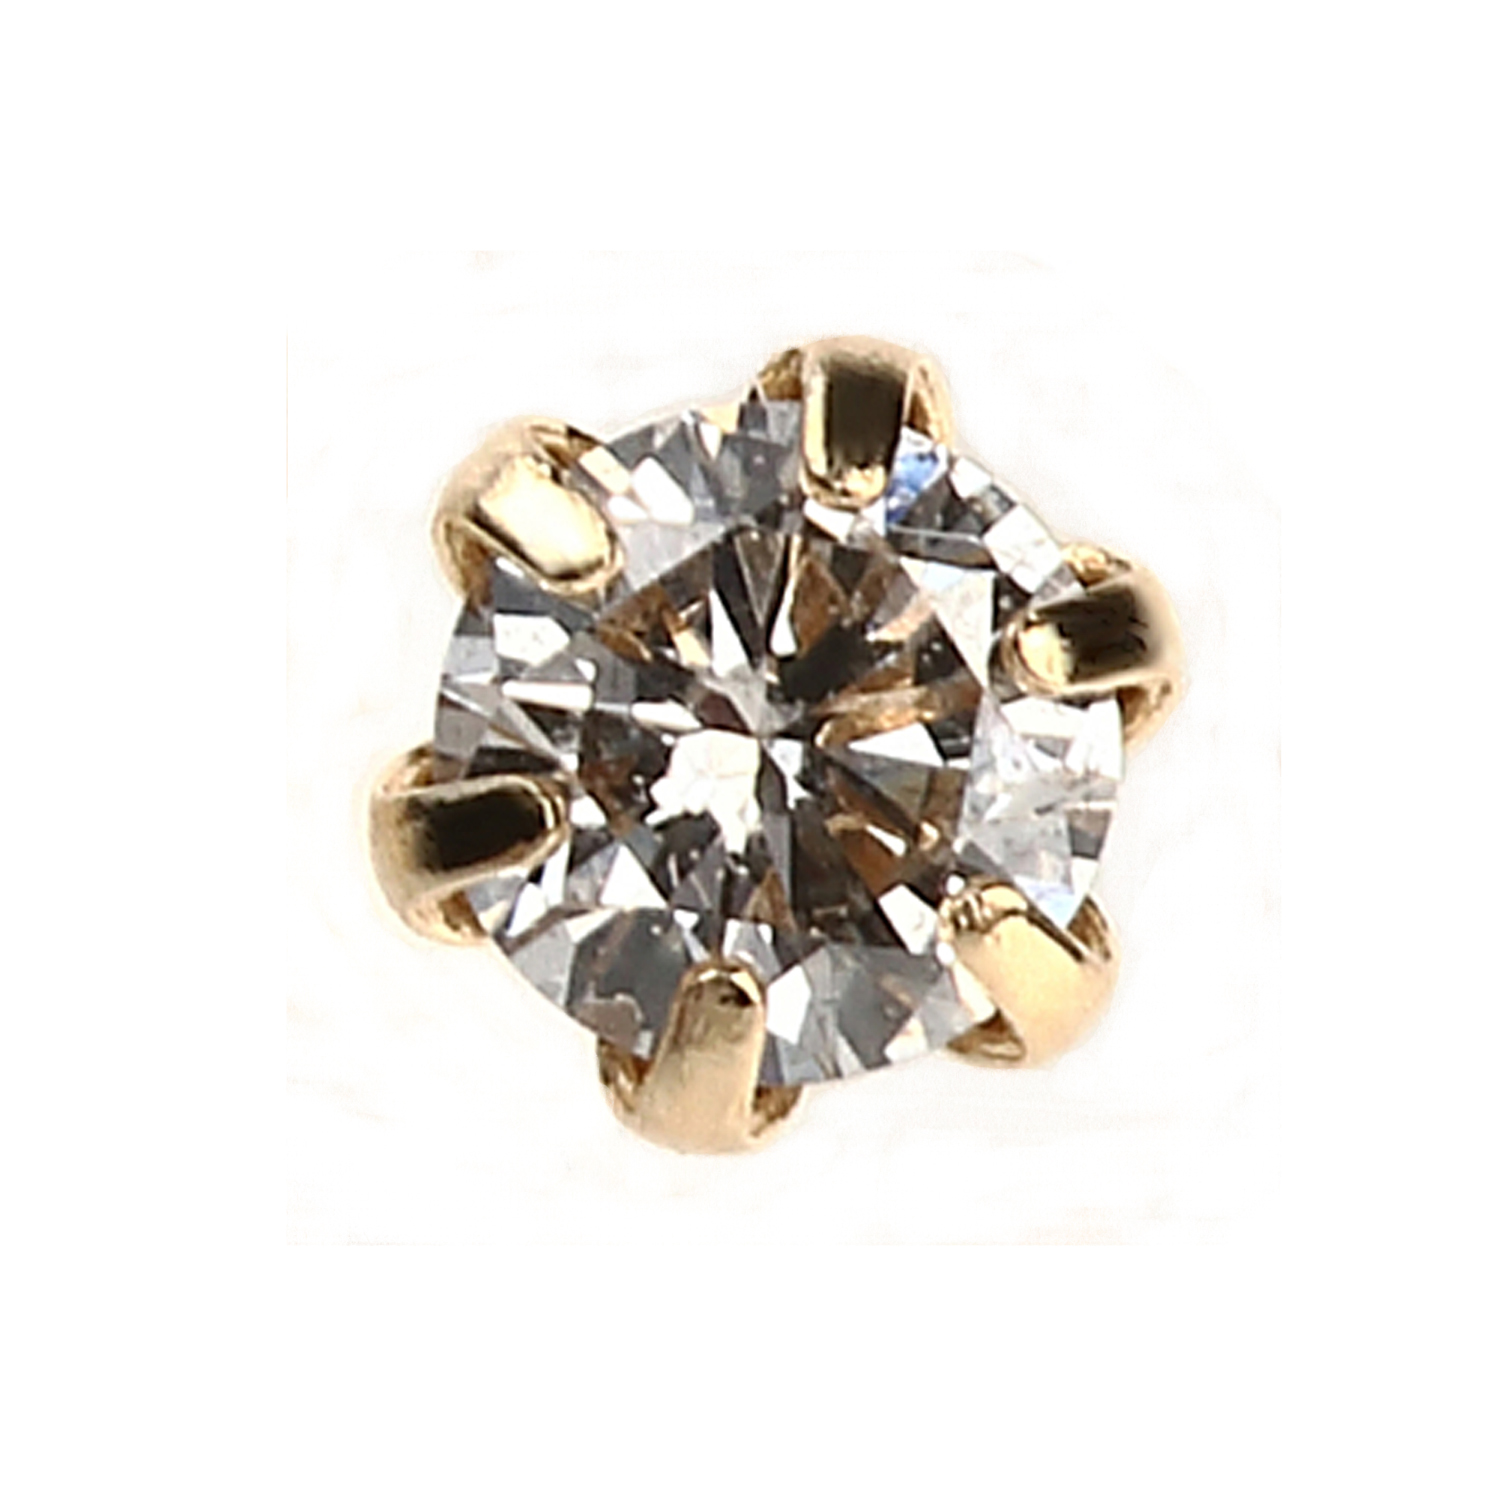 製造元価格 ずっと身につけていたいから安心のオール18金 プラチナ850素材 両耳で0.1カラットのダイヤモンドを使用したたラグジュアリーなスタッドタイプピアスです ダイヤモンド ダイヤ ダイヤピアス ダイヤモンドピアス スタッドピアス 宝石ピアス 豪華ピアス 地金ピアス 地金 ピンクゴールド ゴールド シンプル 18金 金 Dmdピアス0.1ct1K8YG プラチナ850 18K ダイヤモンドピアス0.1カラット18金イエローゴールド イエローゴールド メイルオーダー 【SALE／55%OFF】